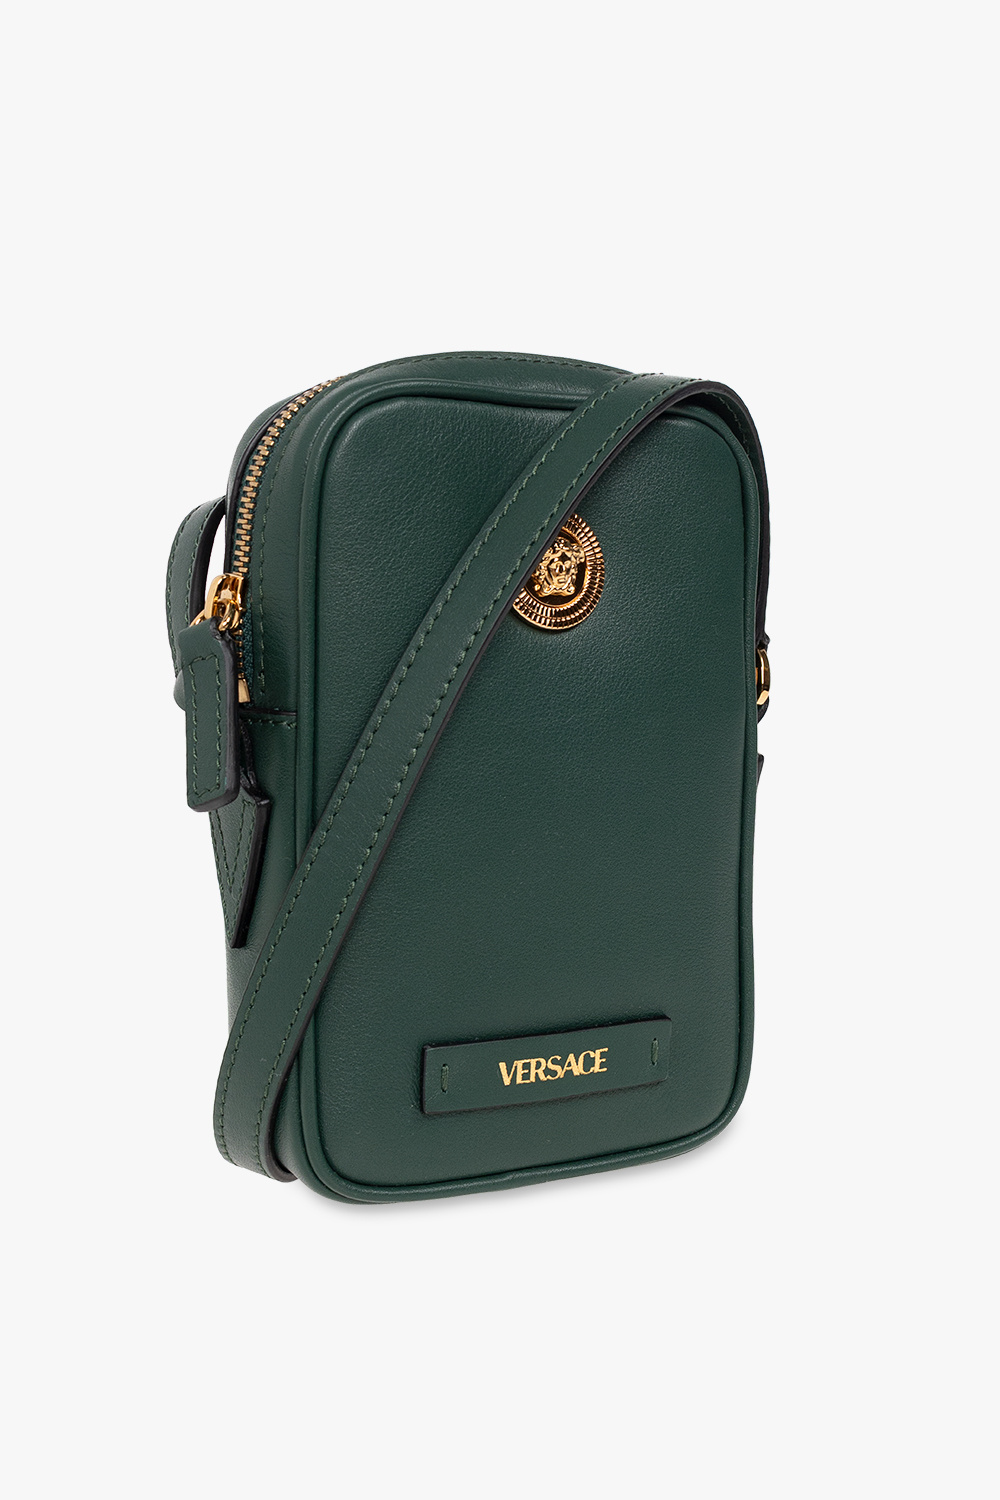 Versace ‘Medusa Biggie’ shoulder bag